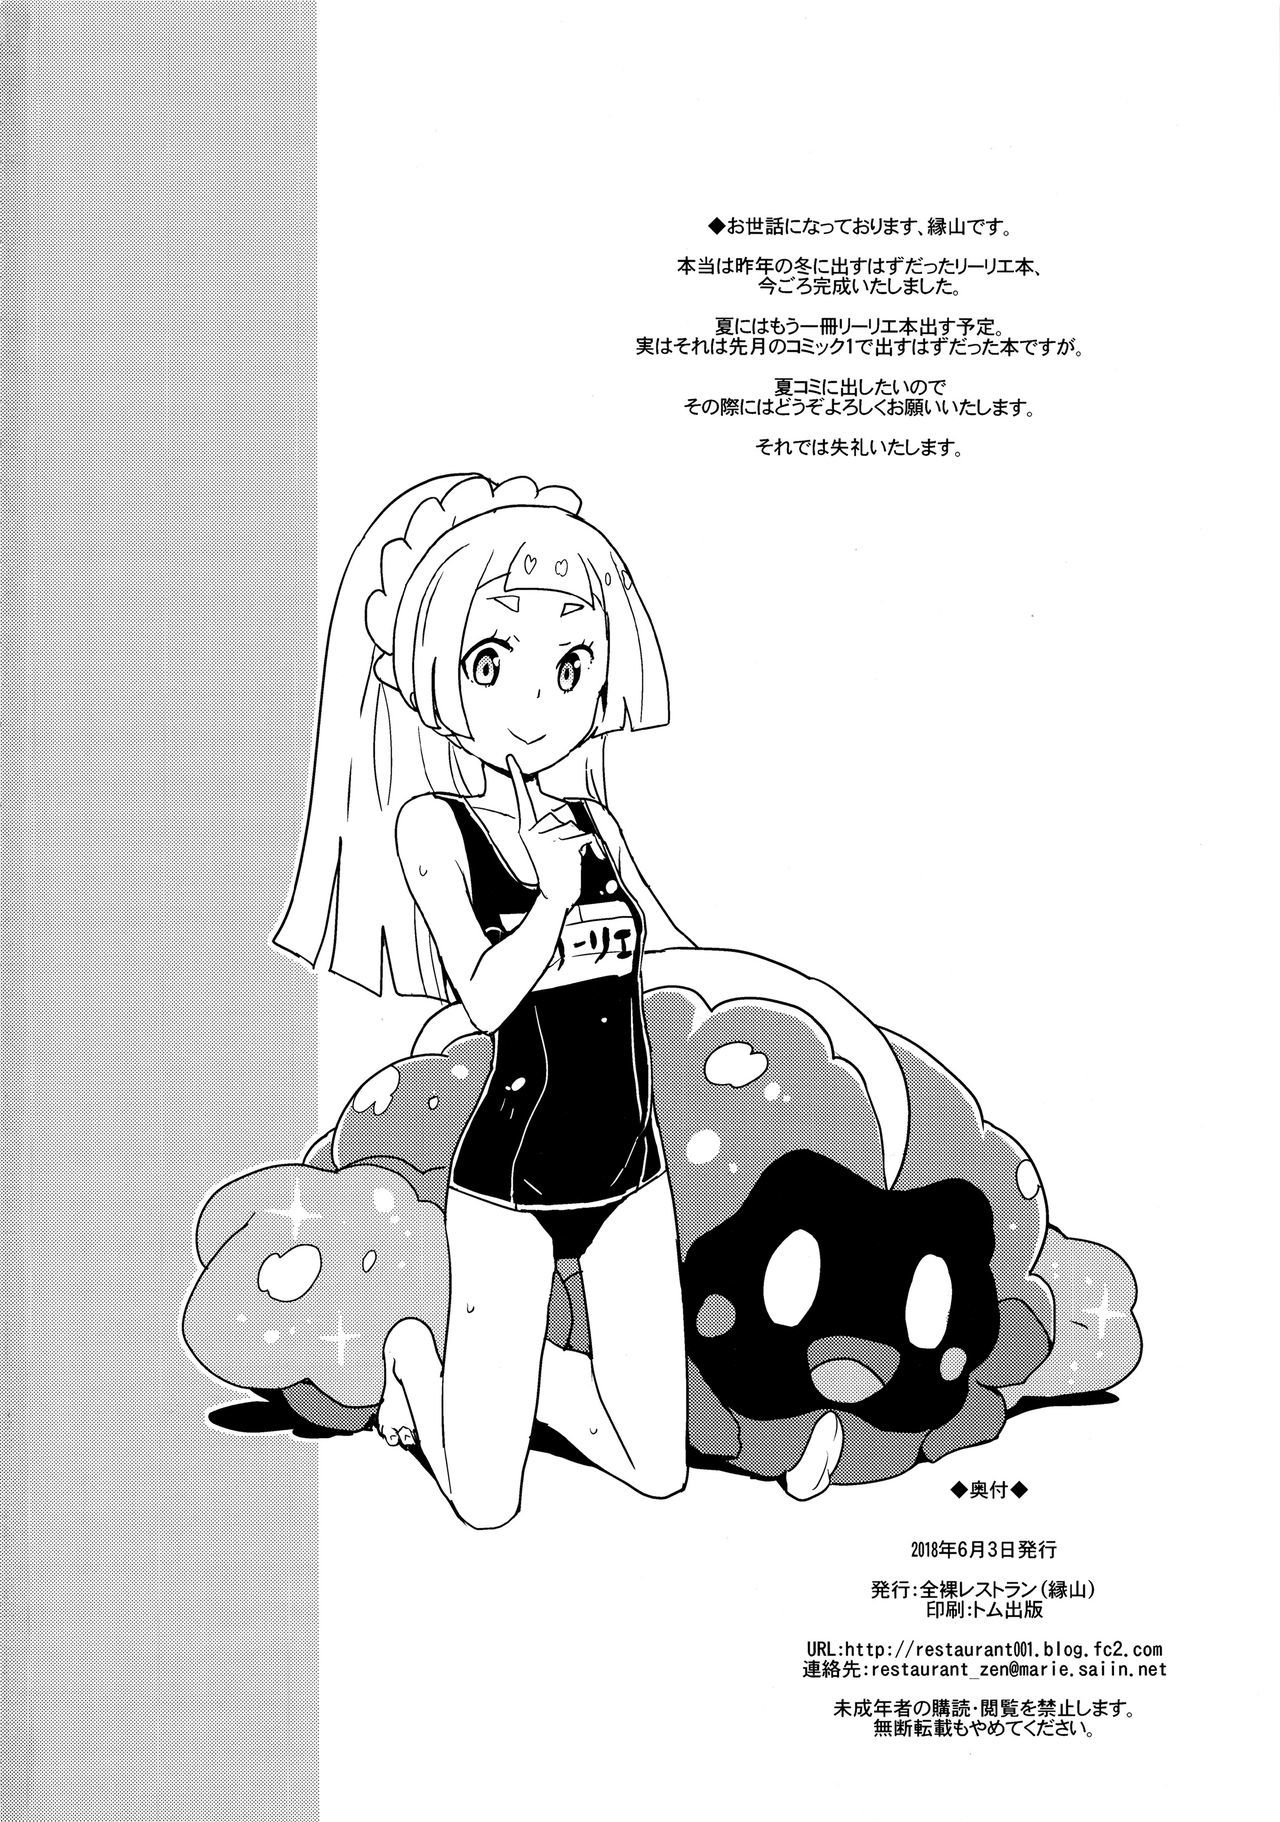 Lillie Kimi no Atama Boku ga Yoku Shite Ageyou (Pokémon Sun and Moon) - 30